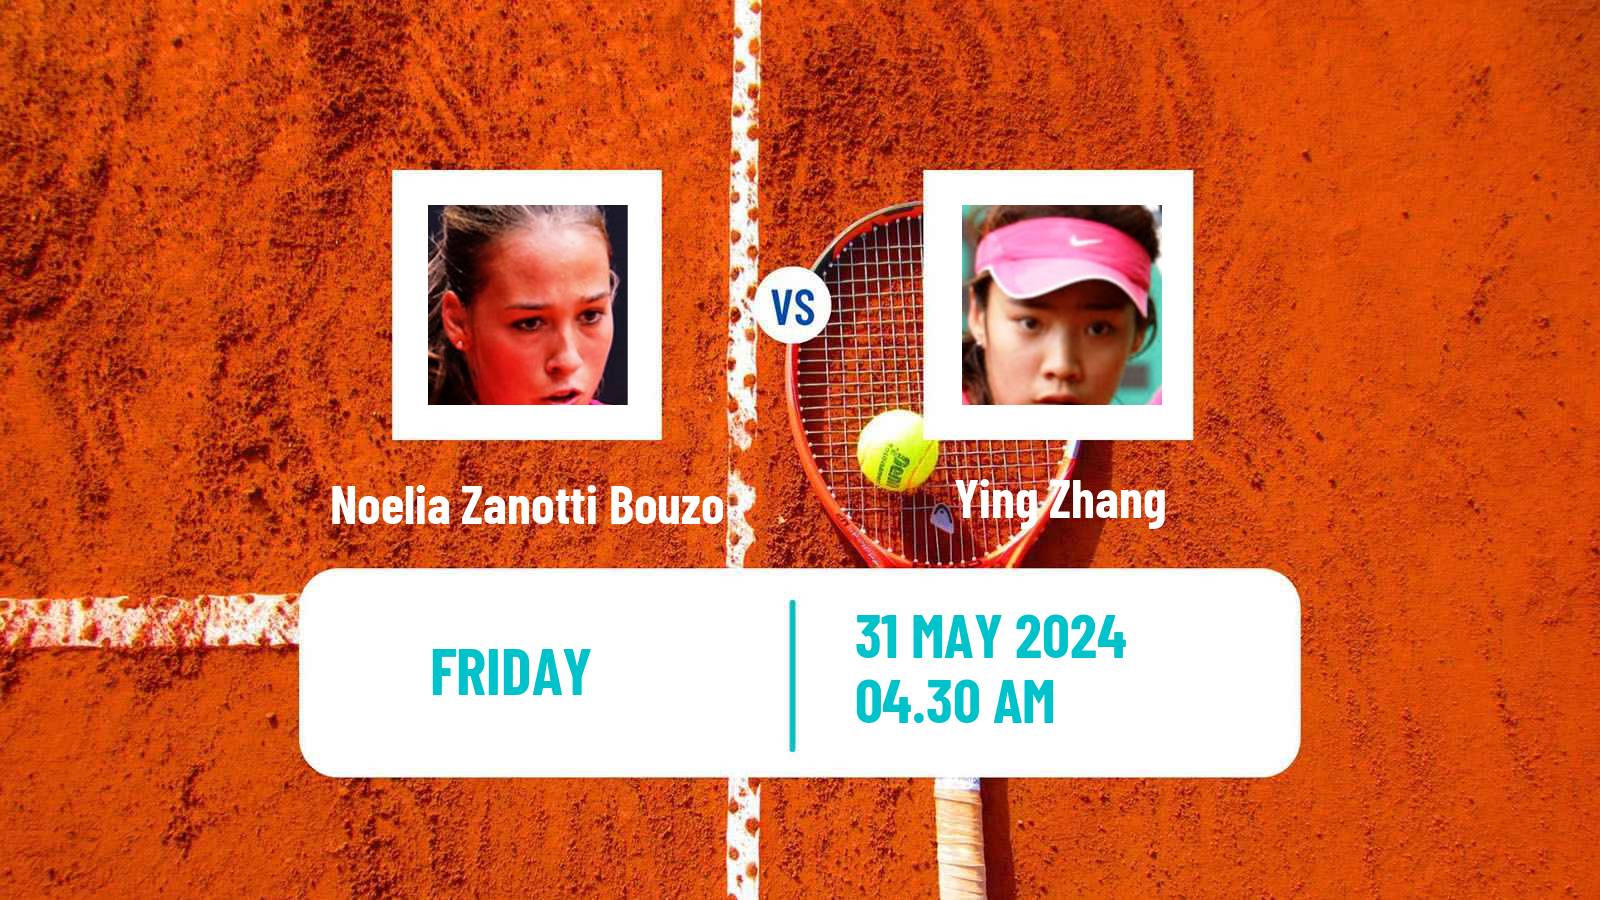 Tennis ITF W15 Monastir 20 Women Noelia Zanotti Bouzo - Ying Zhang